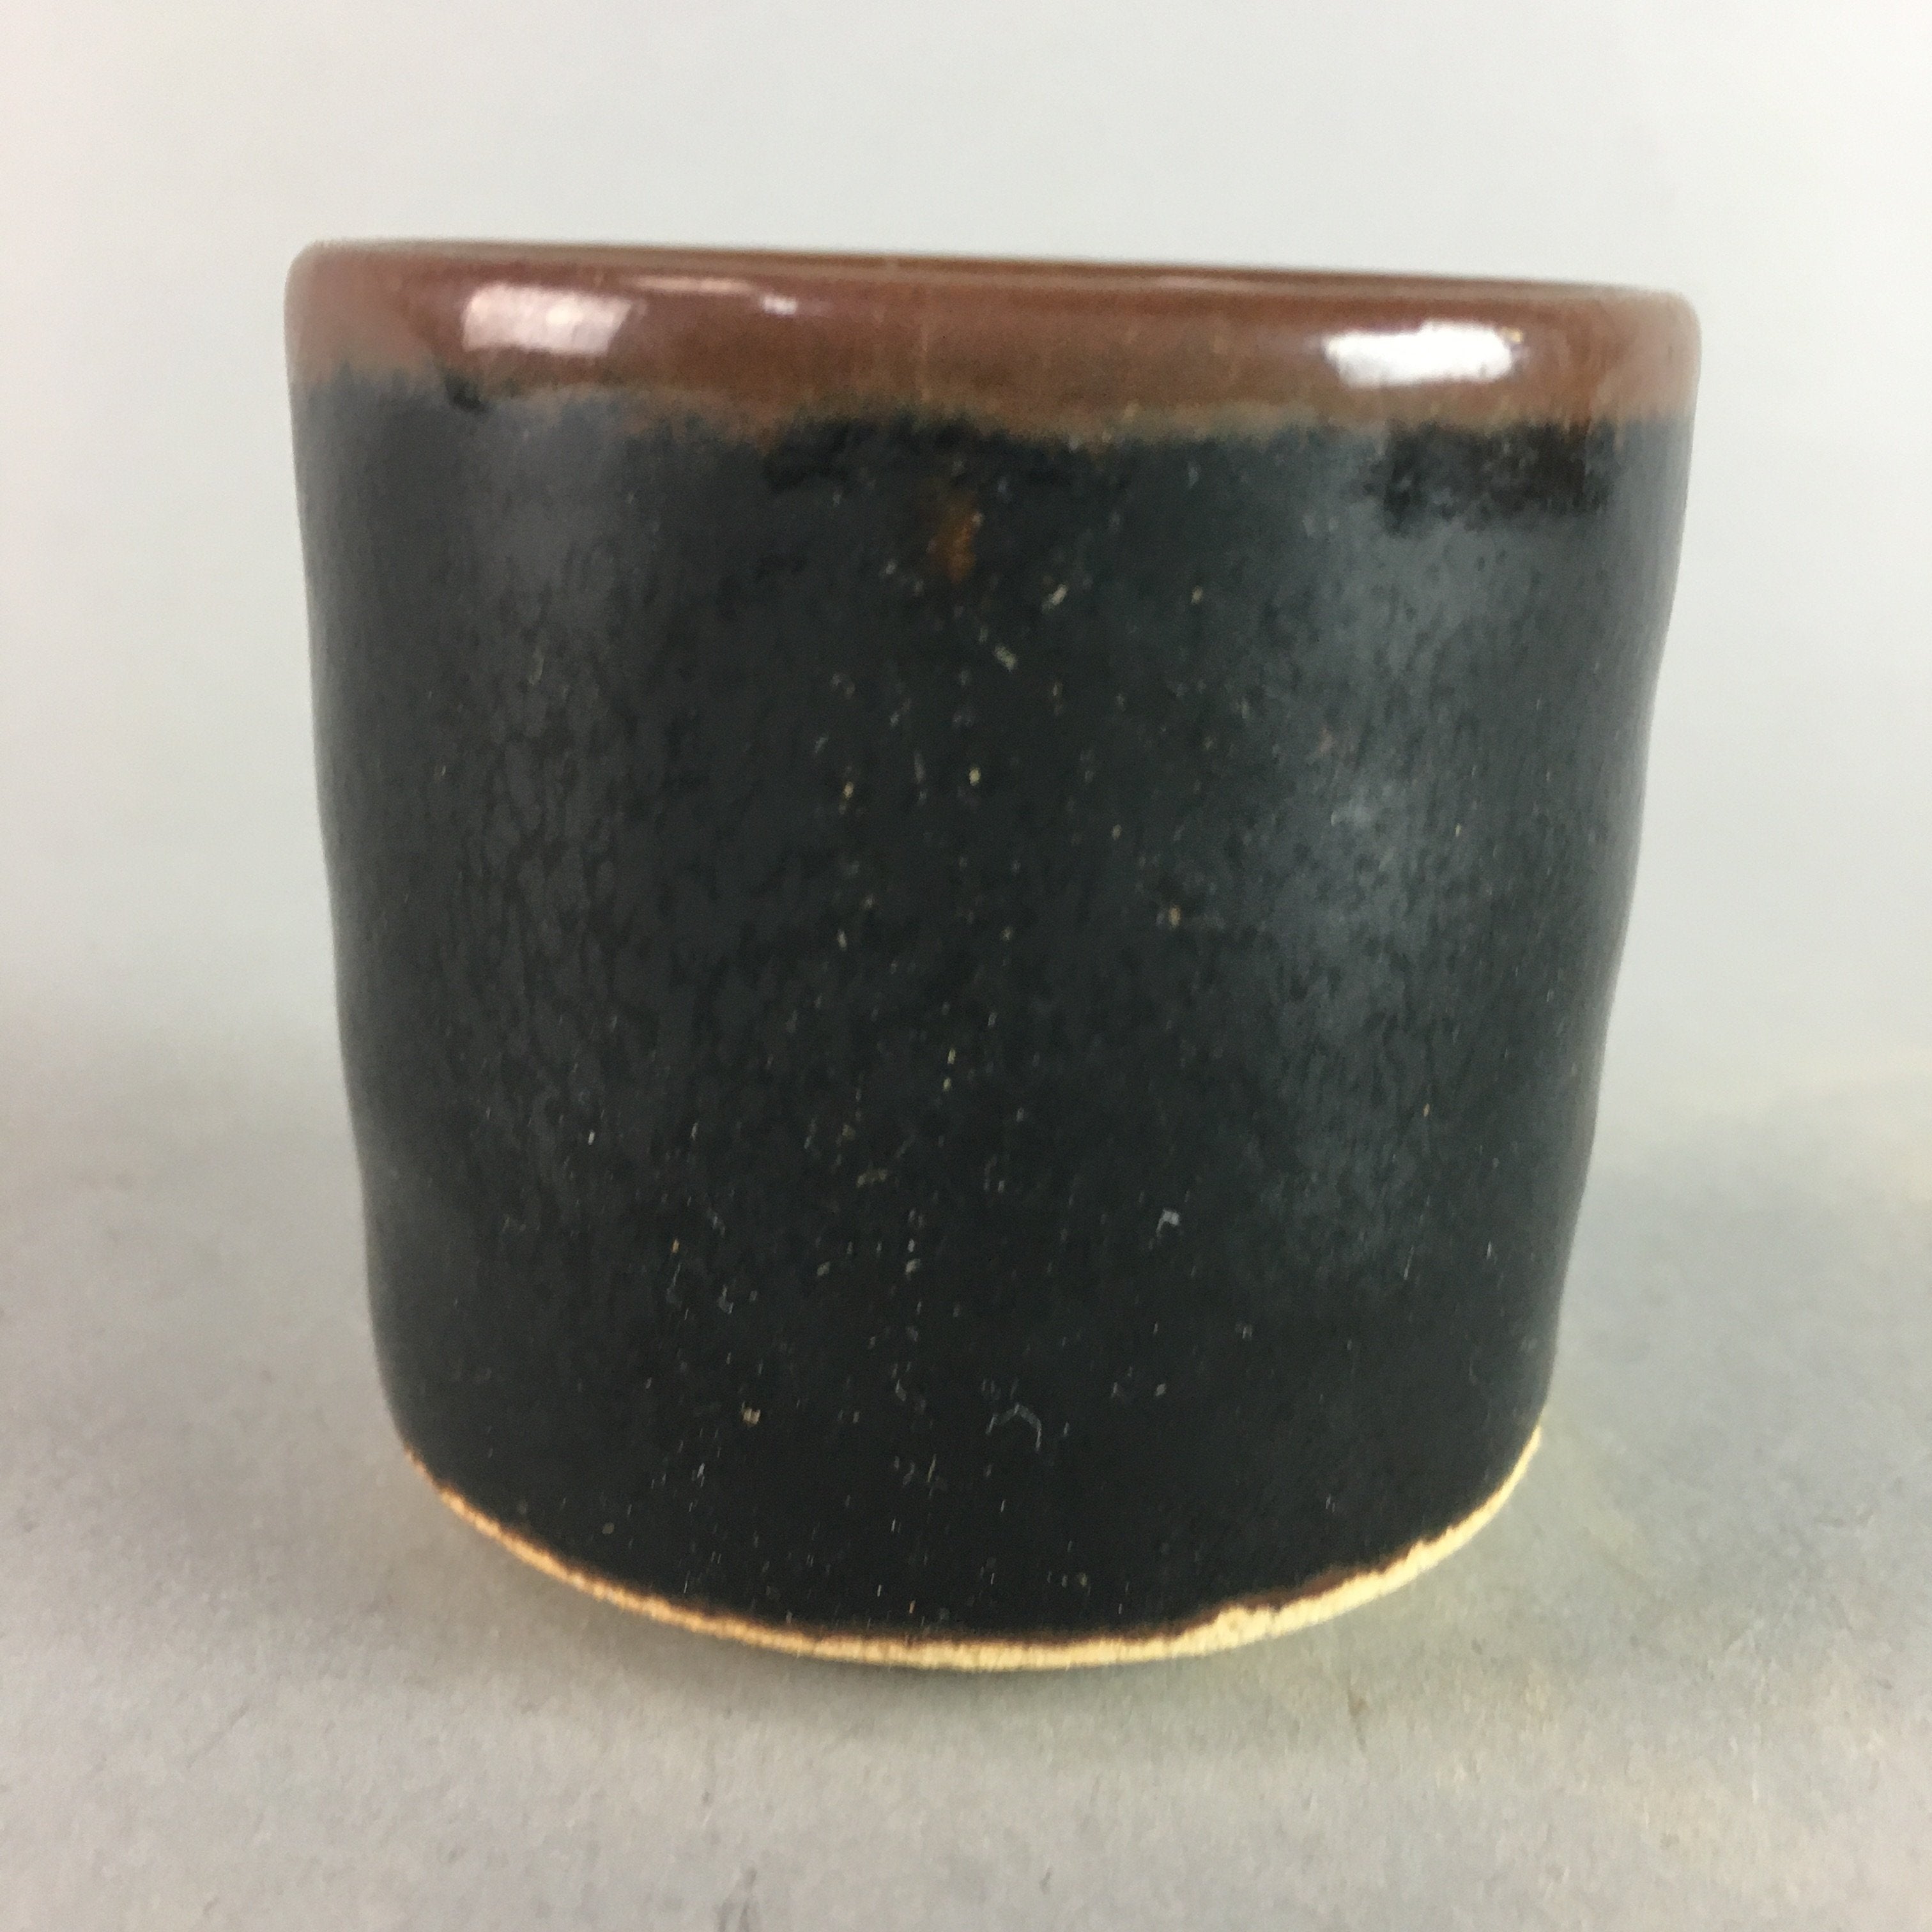 Japanese Tenmoku Sake Cup Ceramic Guinomi Sakazuki Vtg Signed Pottery GU507